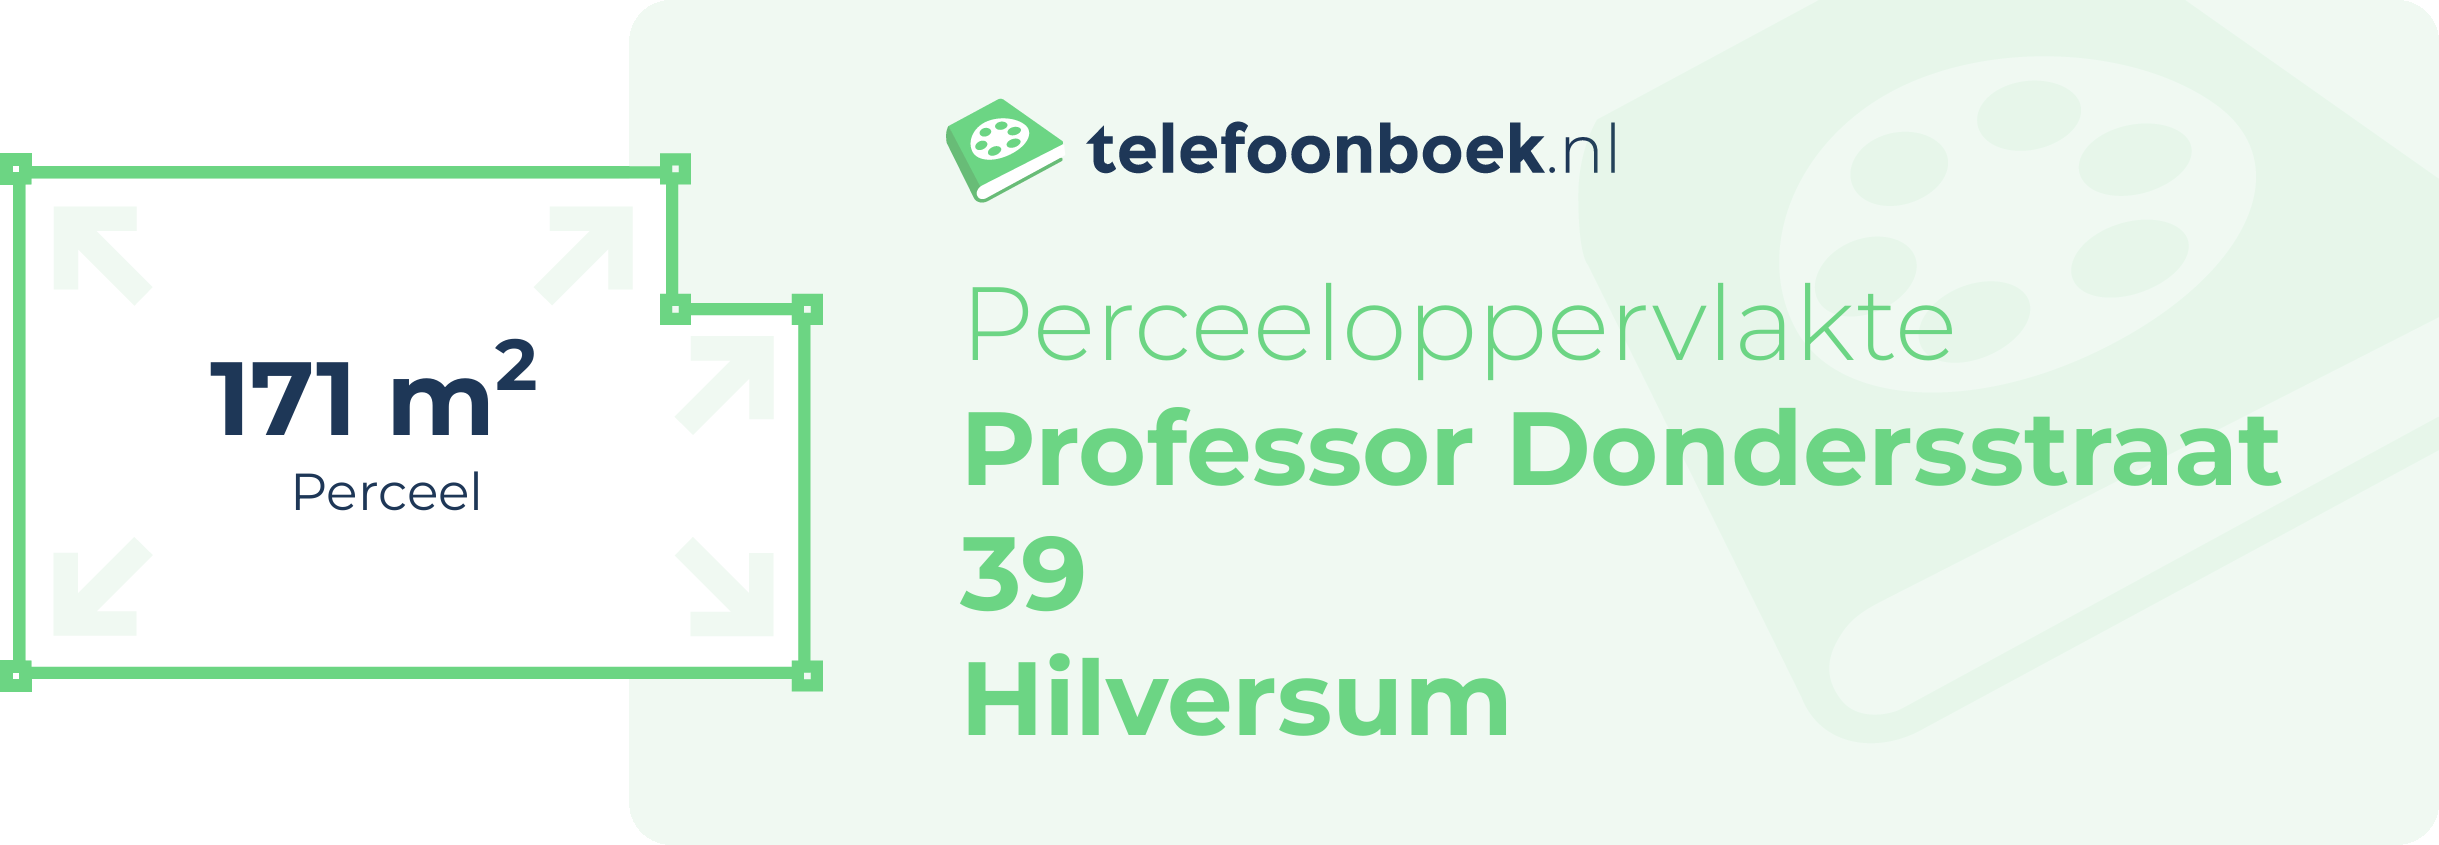 Perceeloppervlakte Professor Dondersstraat 39 Hilversum